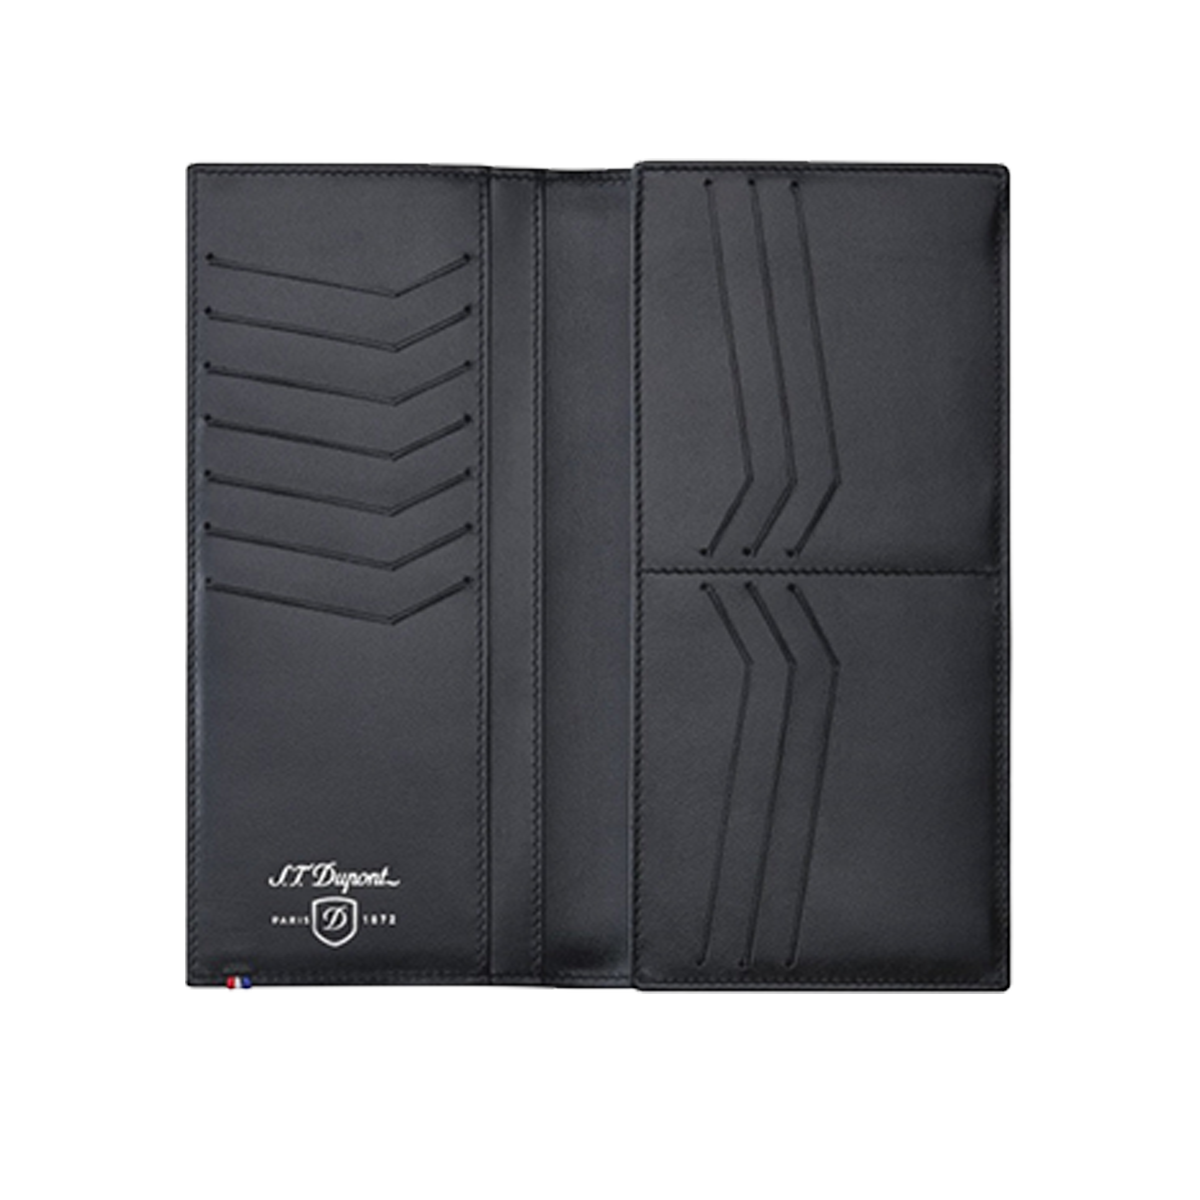 Портмоне Defi 170014 Цвет Чёрный Кожа Carbone, 13 карманов для кредитных карт, RFID защита | S.T. Dupont